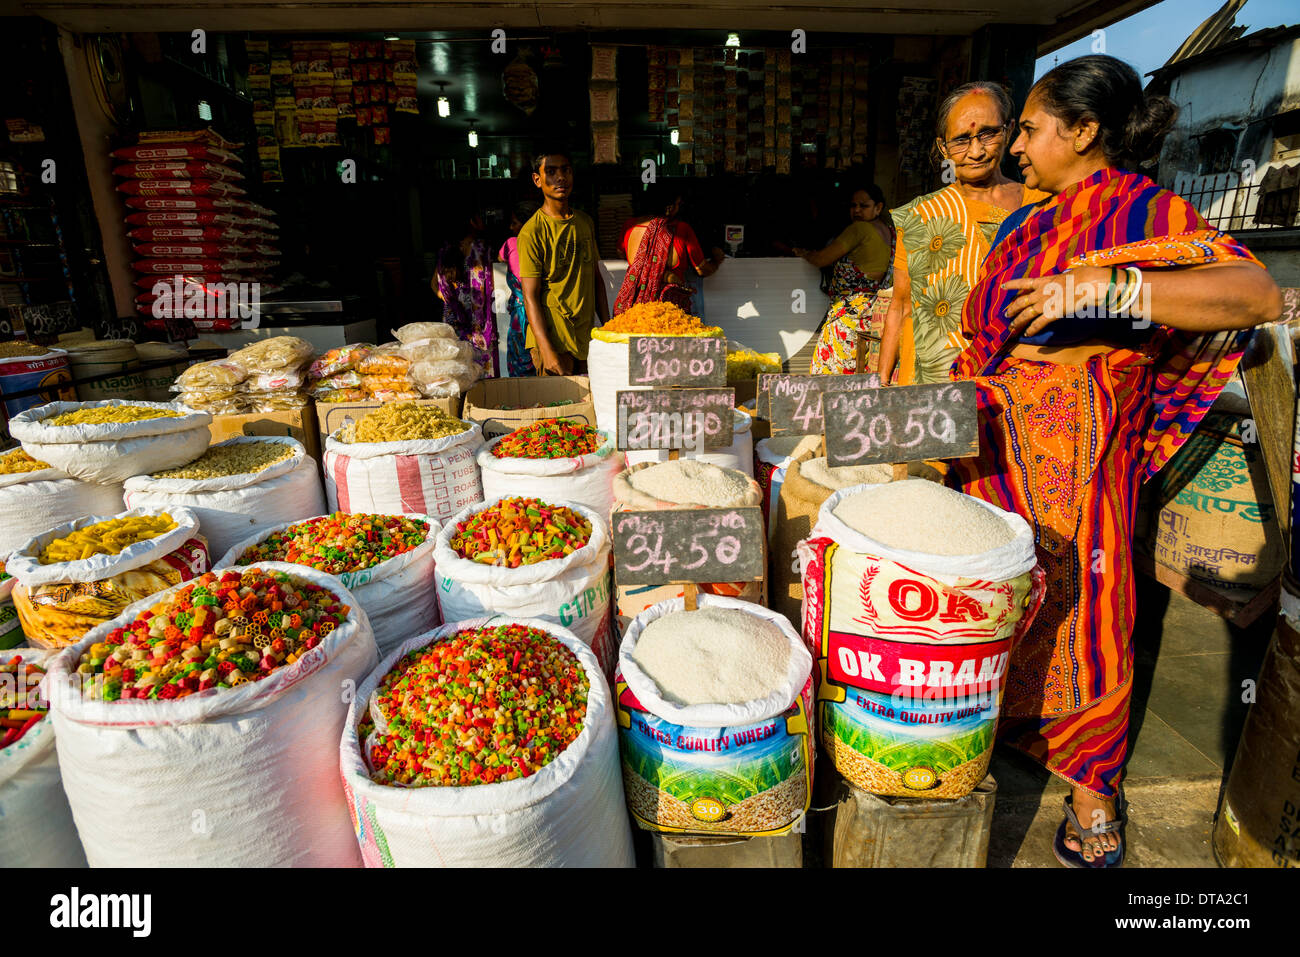 Varie tagliatelle in vendita in sacchi in un mercato all'aperto, Mumbai, Maharashtra, India Foto Stock